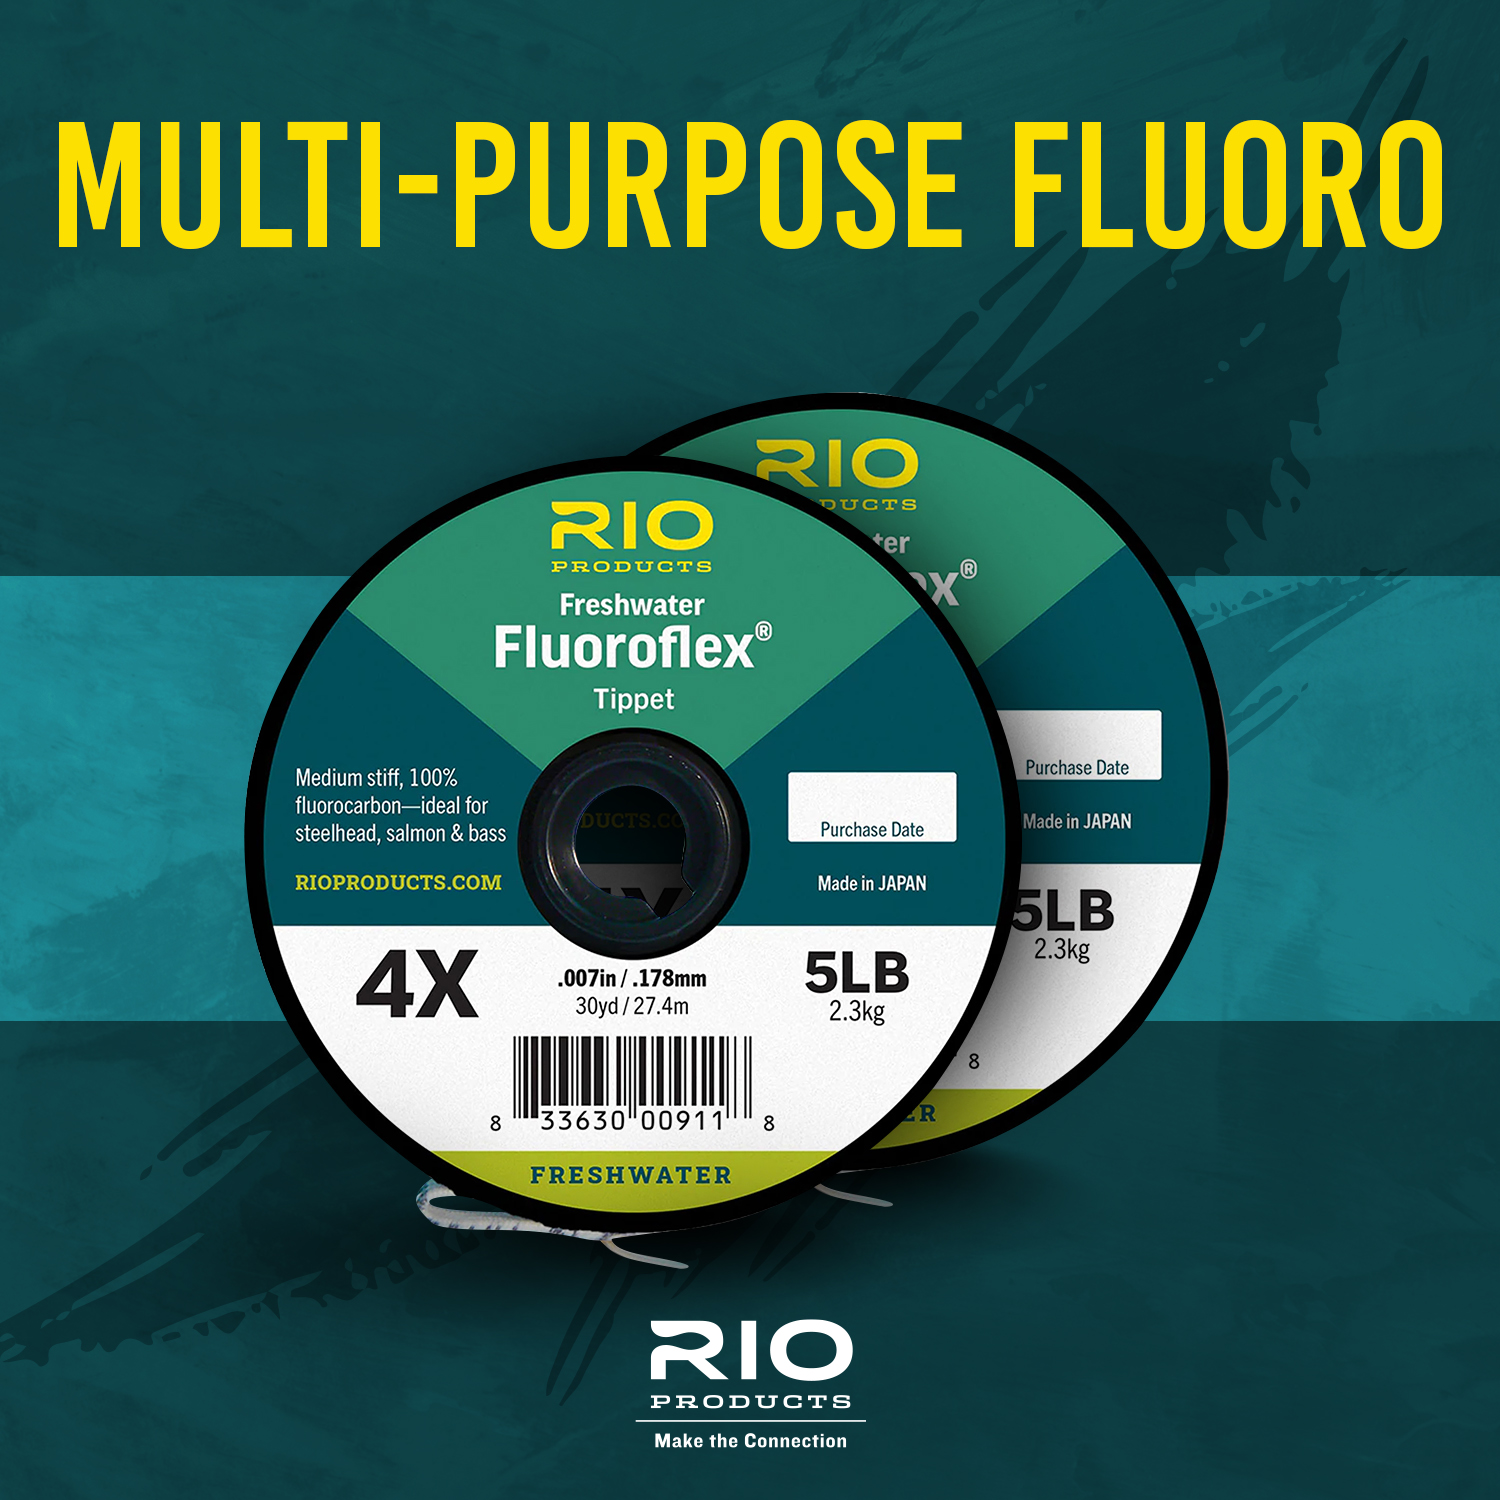 RIO Powerflex Tippet – Guide Flyfishing, Fly Fishing Rods, Reels, Sage, Redington, RIO